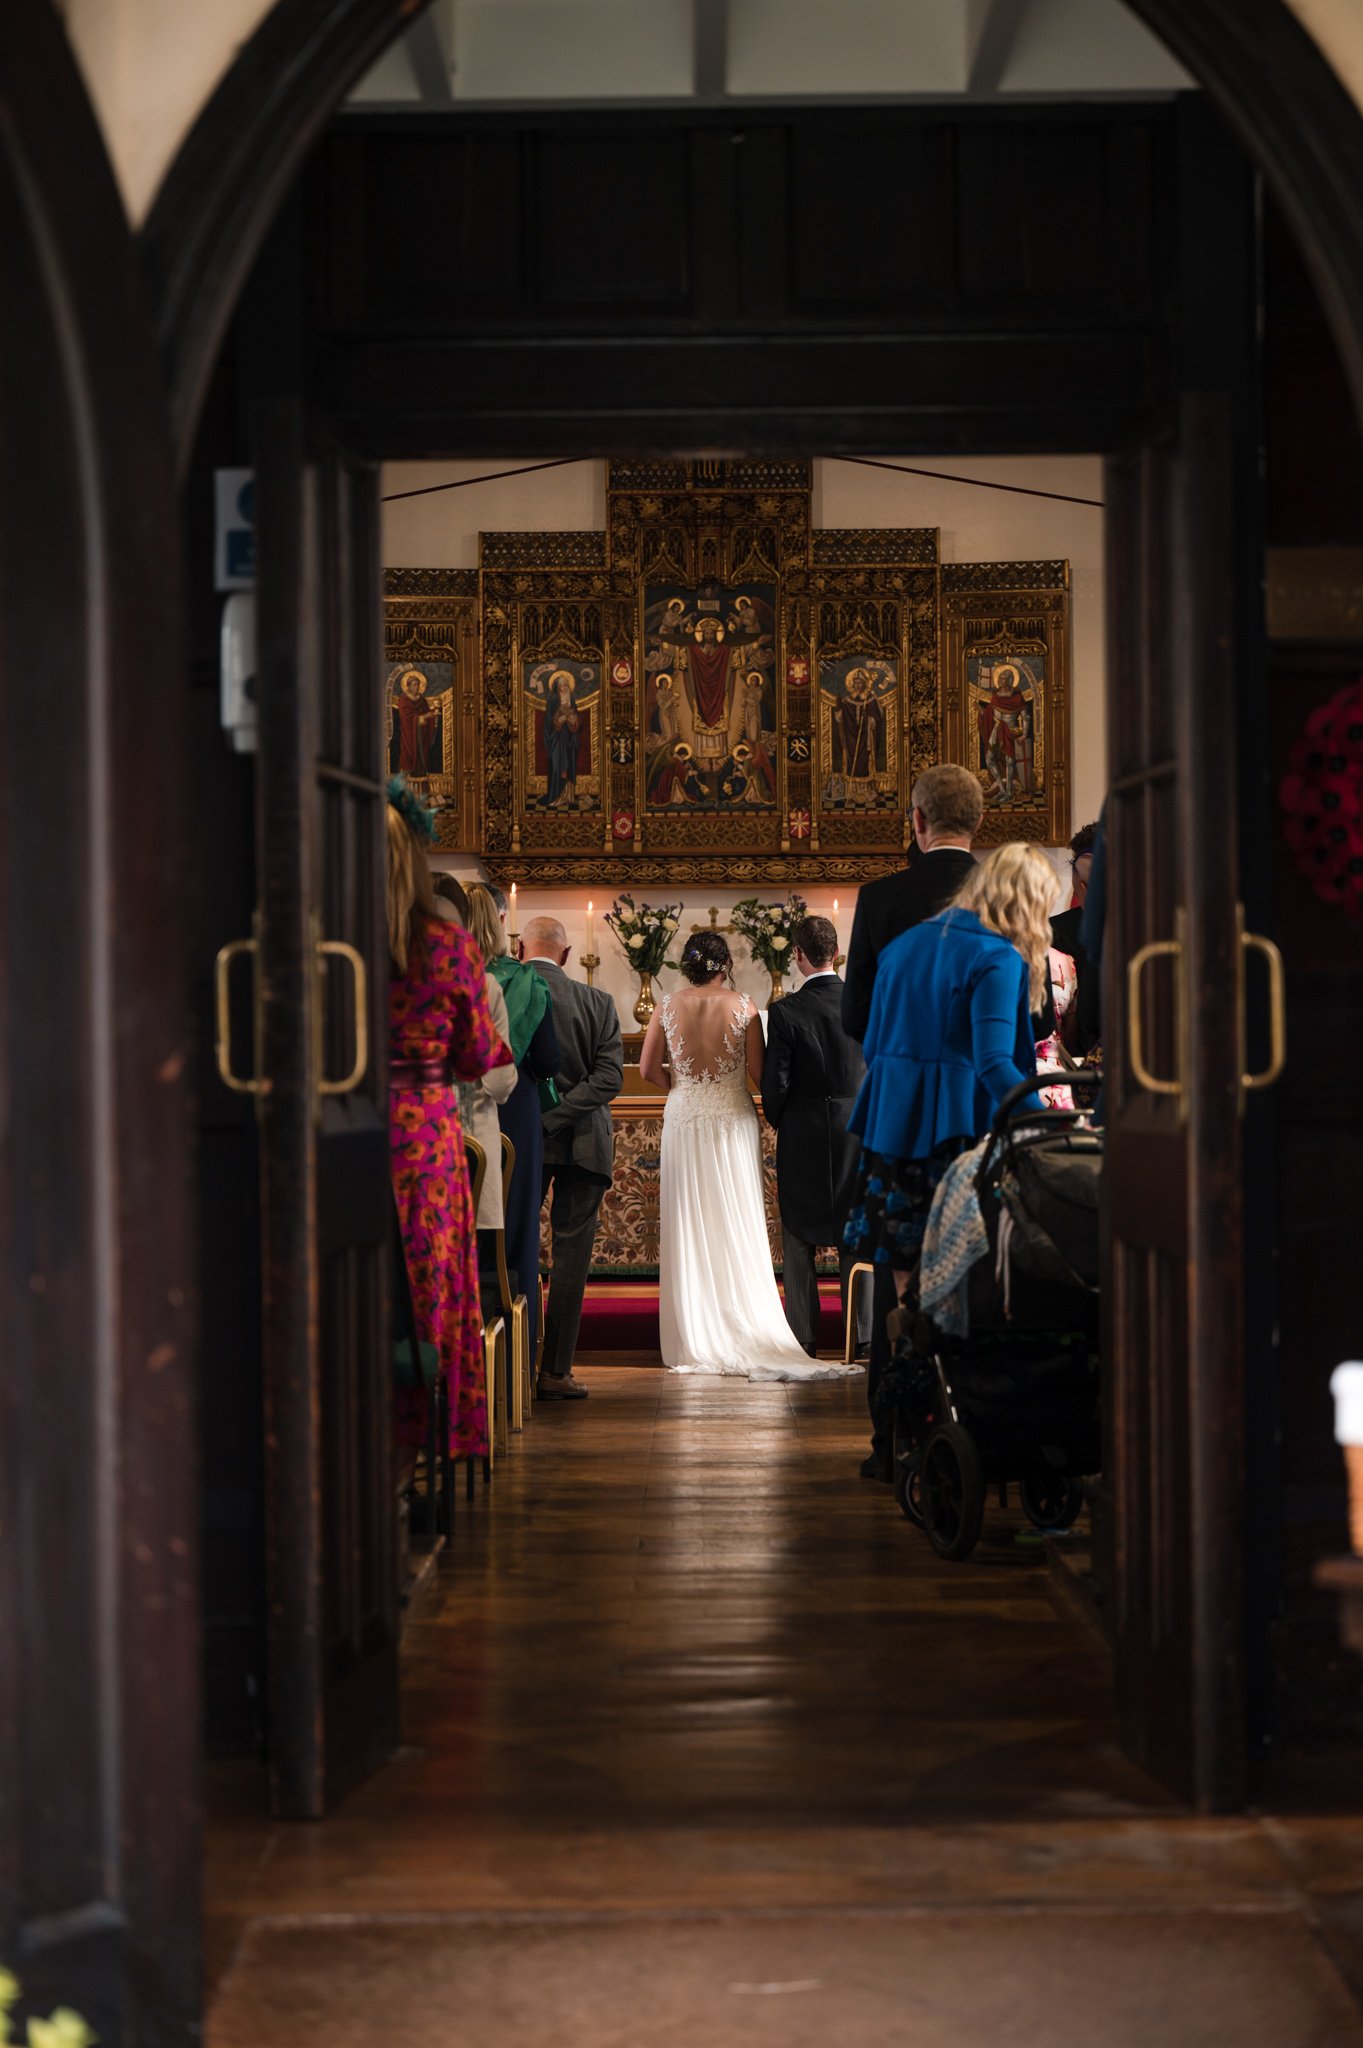 St-Chads-College-Durham-Wedding-Photography (2 of 20).jpg